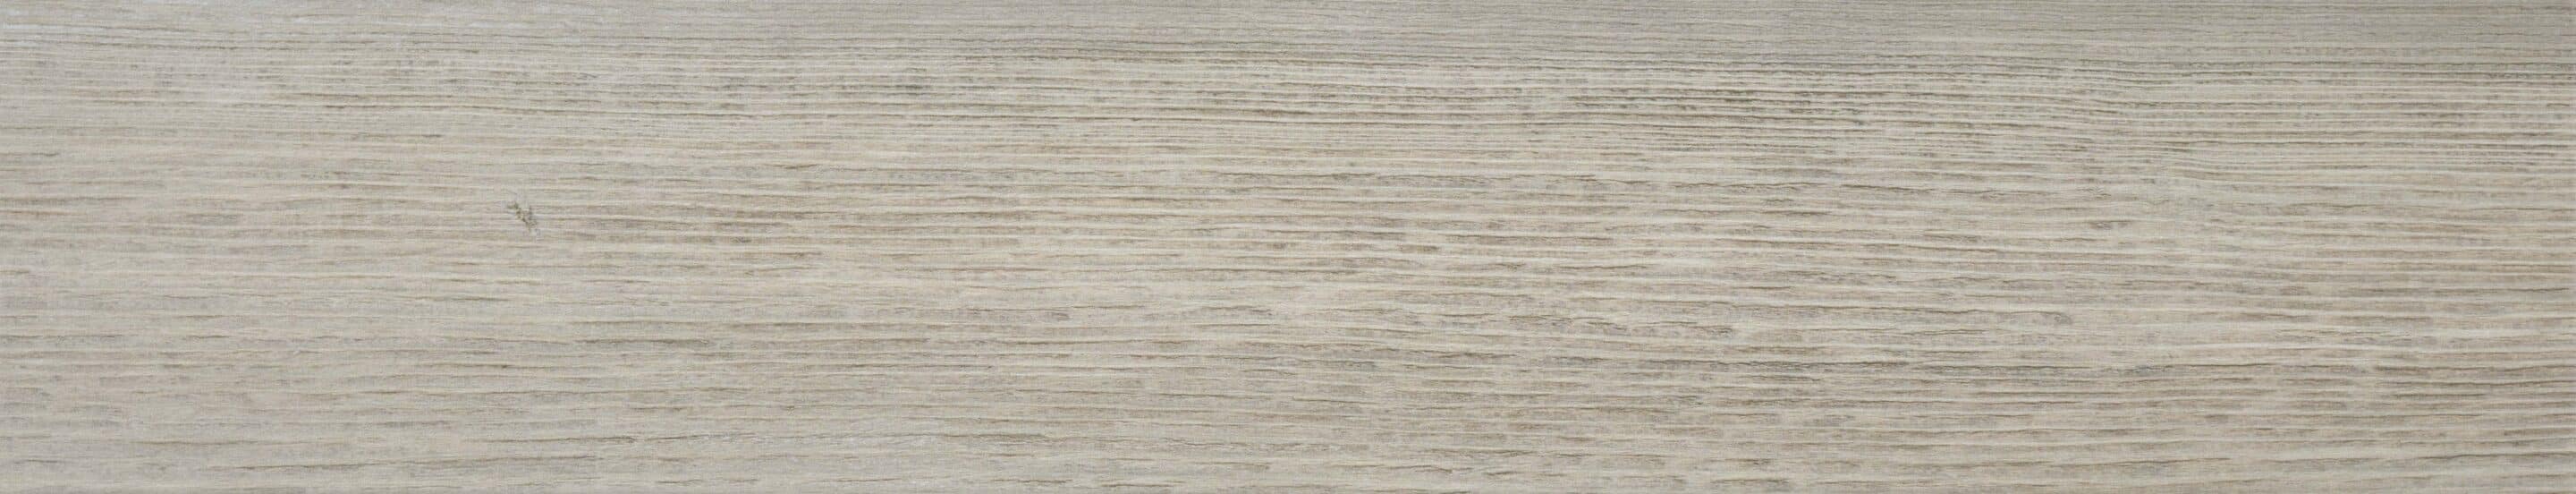 suelos cerámicos imitación madera Olson Sky 23x120 cm